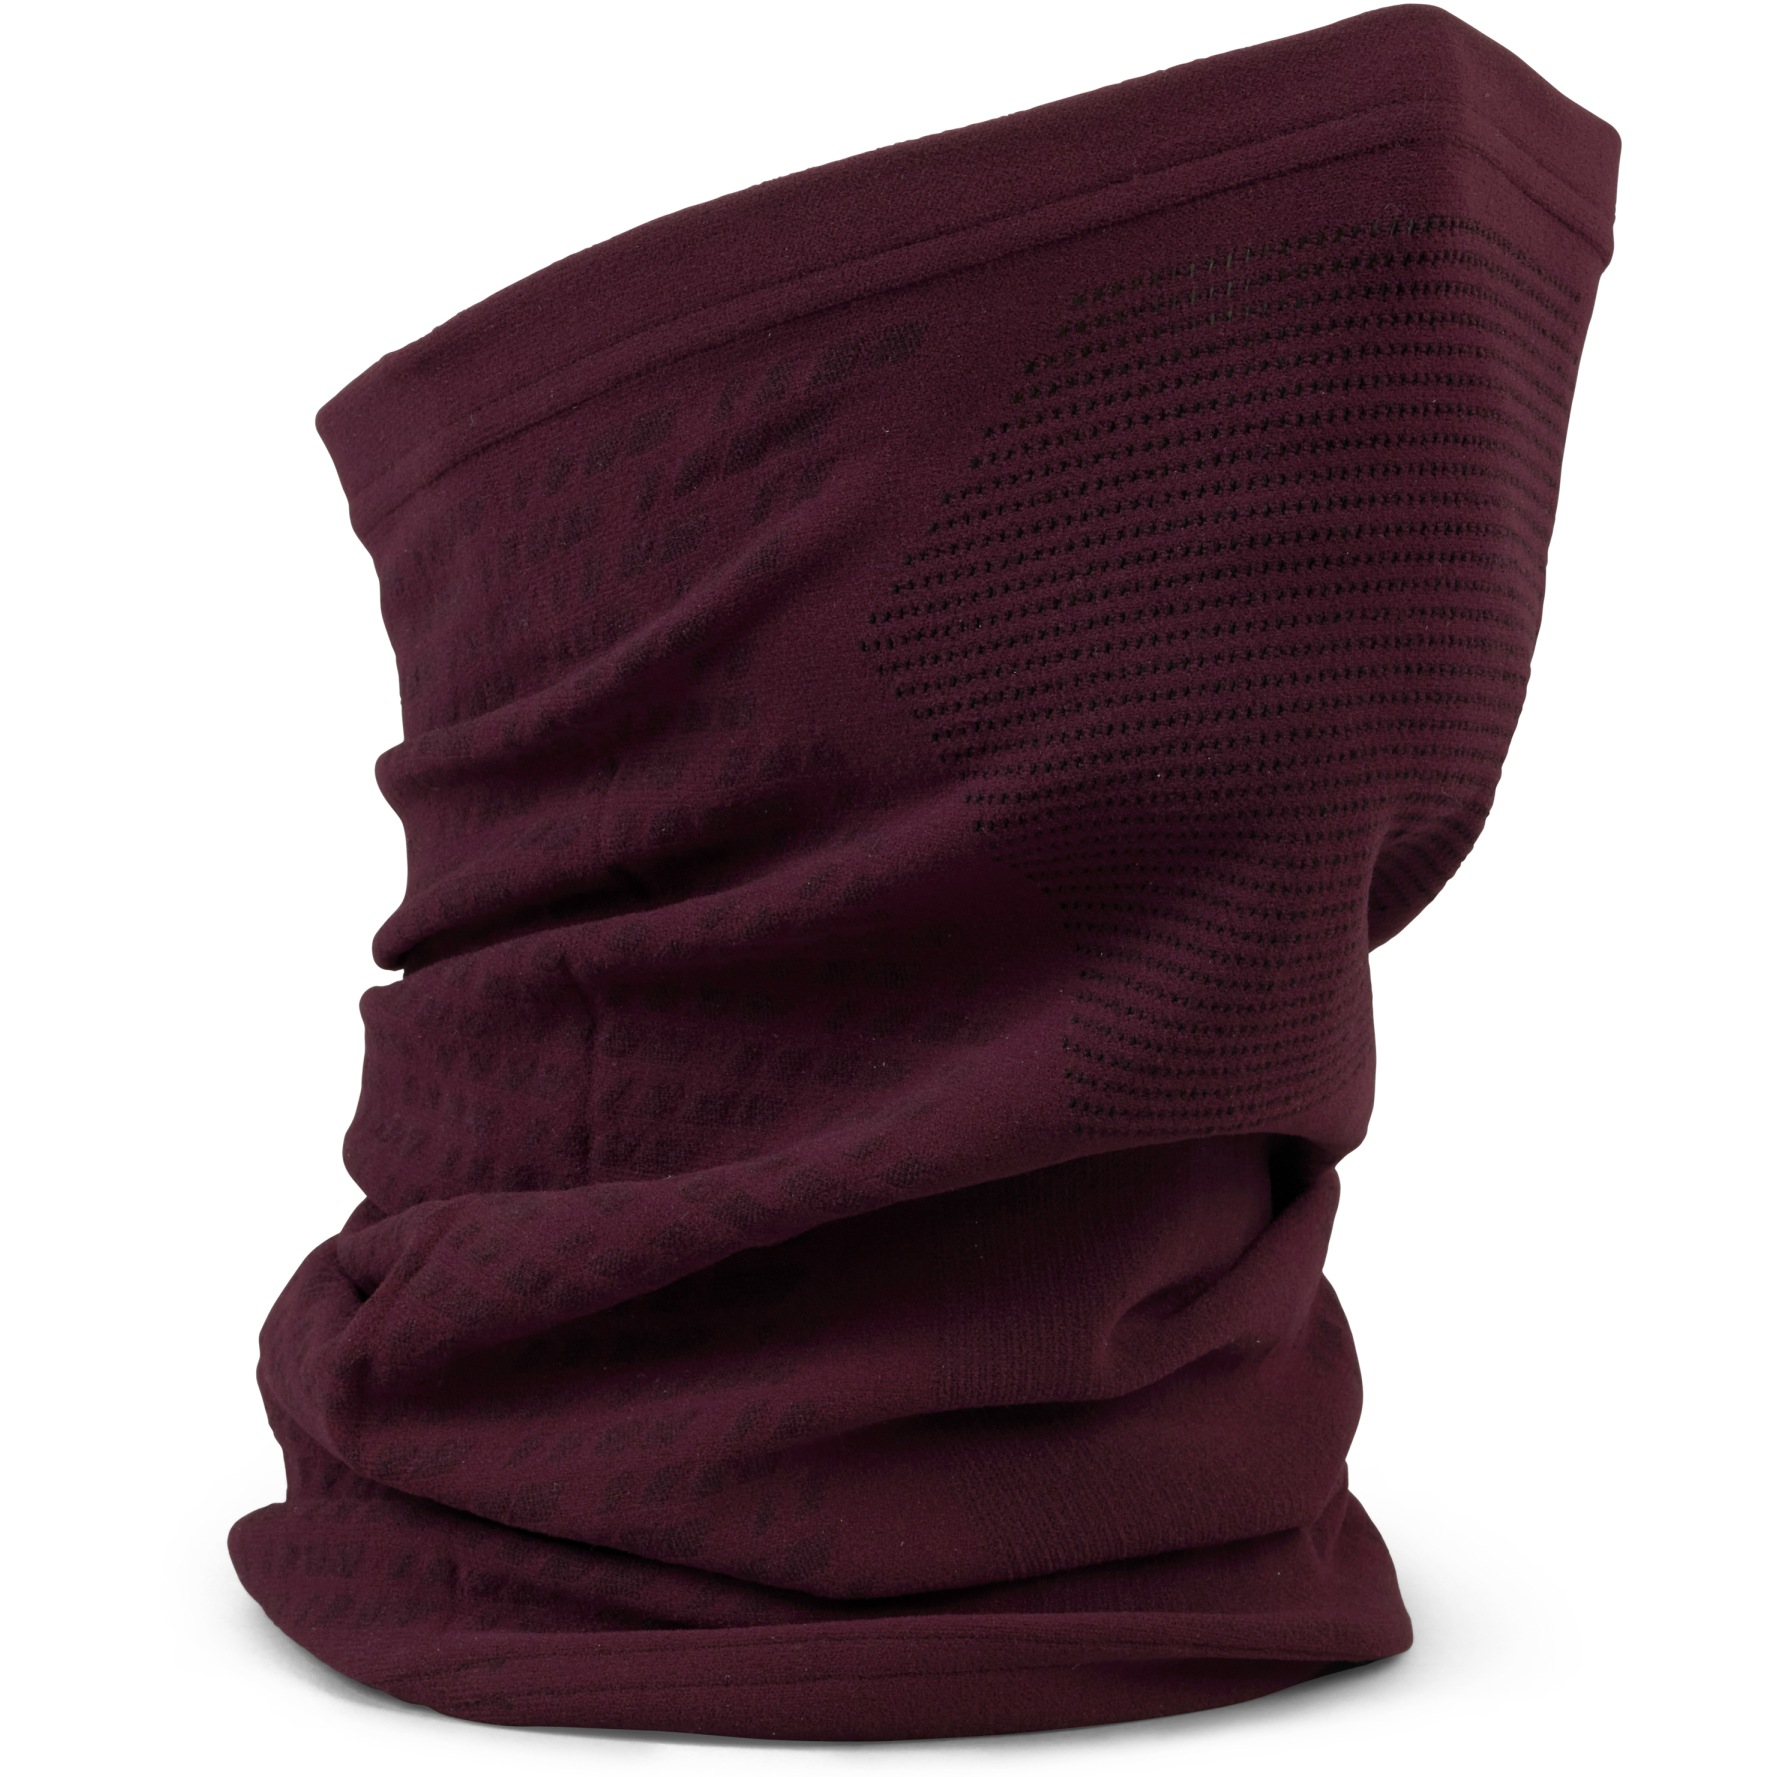 Productfoto van GripGrab Freedom Warp Knitted Seamless Multifunctionele Halsdoek - Dark Red